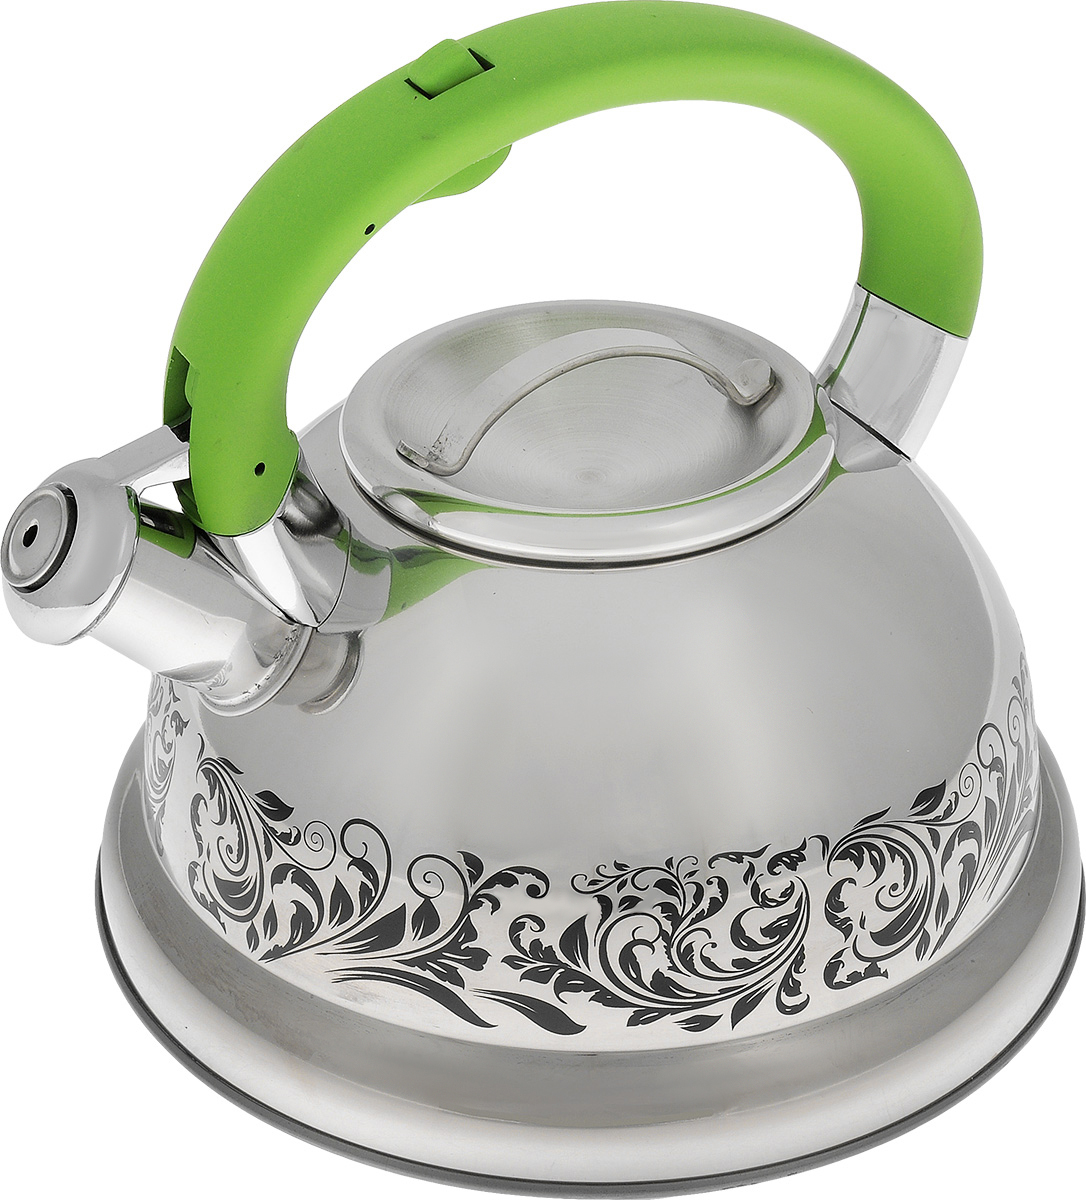 Лучший чайник из нержавеющей стали. Mayer Boch чайник зелёный. Mayer & Boch чайник 25663 2,6 л. Чайник Майер бош для газовой плиты. Чайник Mayer Boch со свистком.